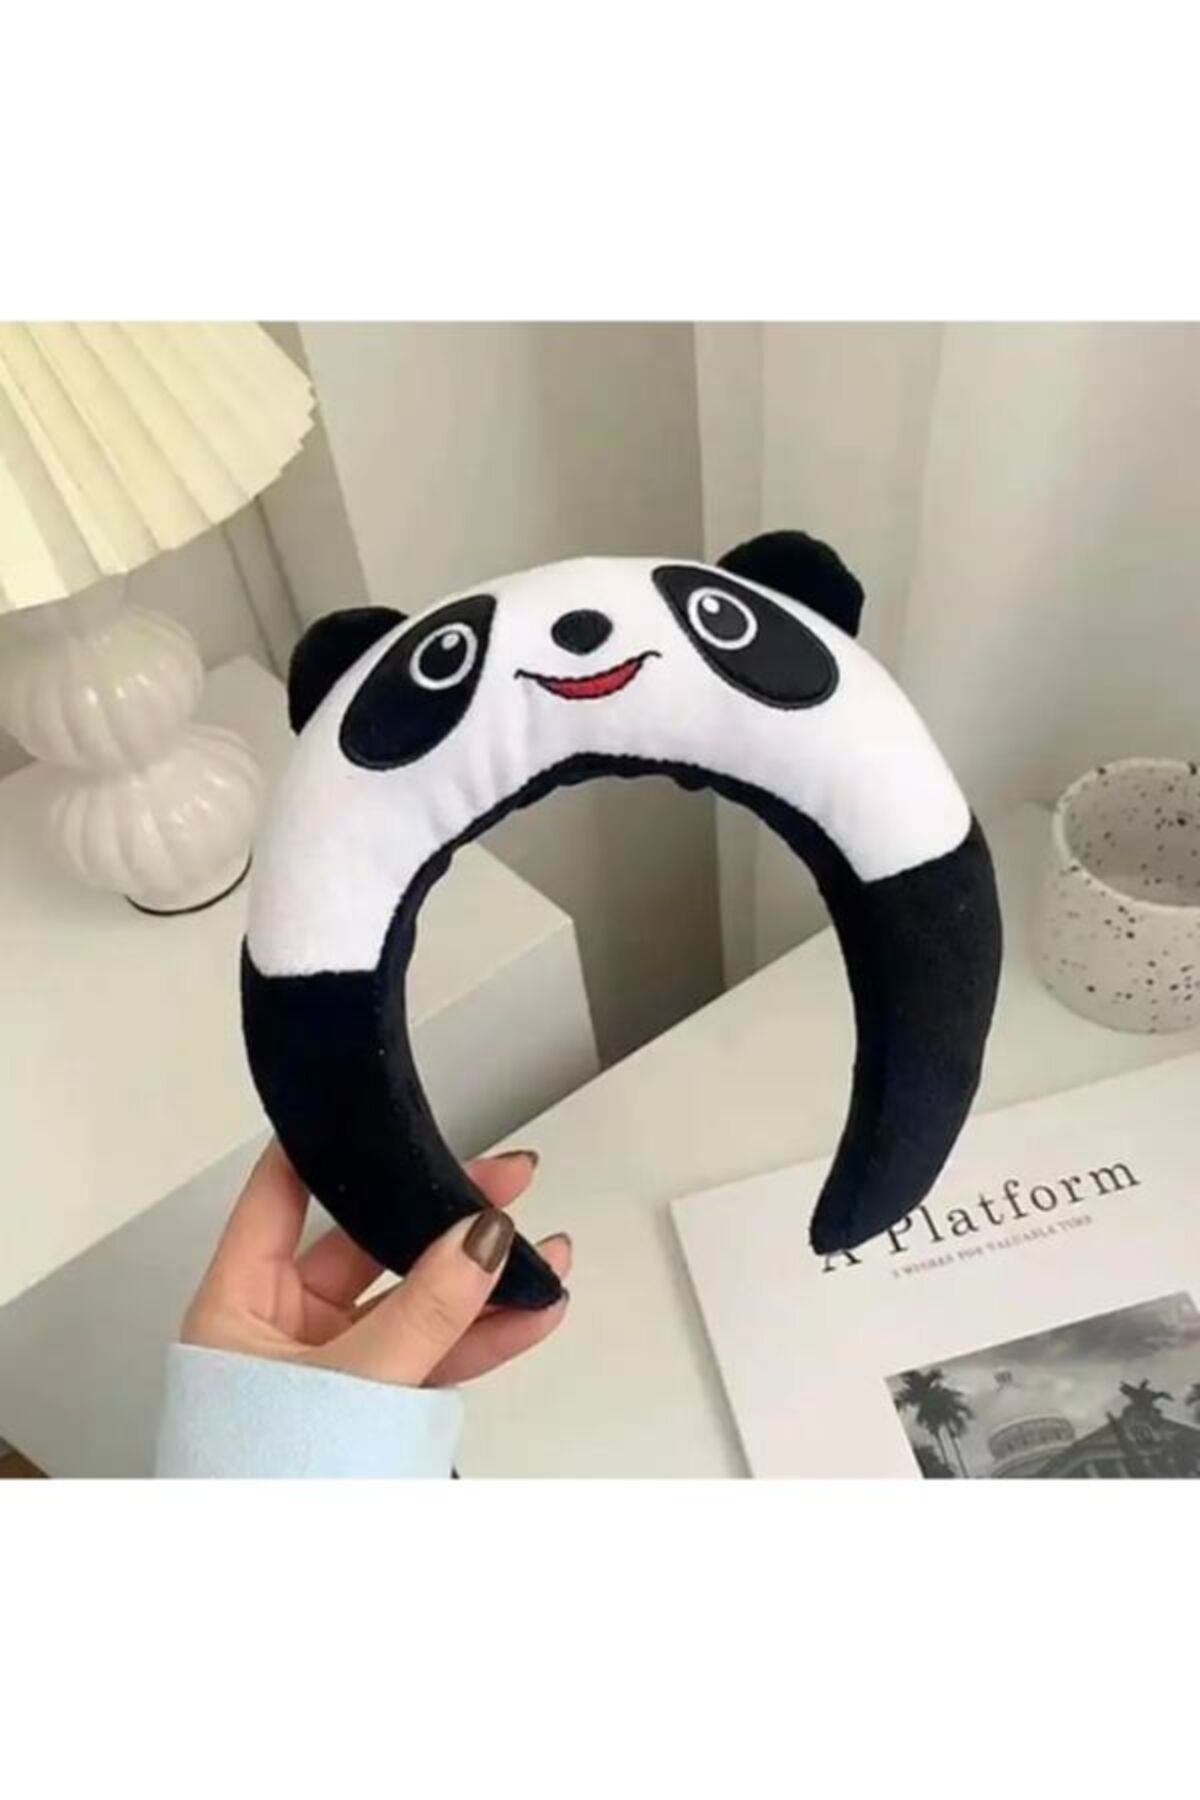 oyuncakçısavaş &europe shop Panda Tasarımlı Peluş Taç yeni model